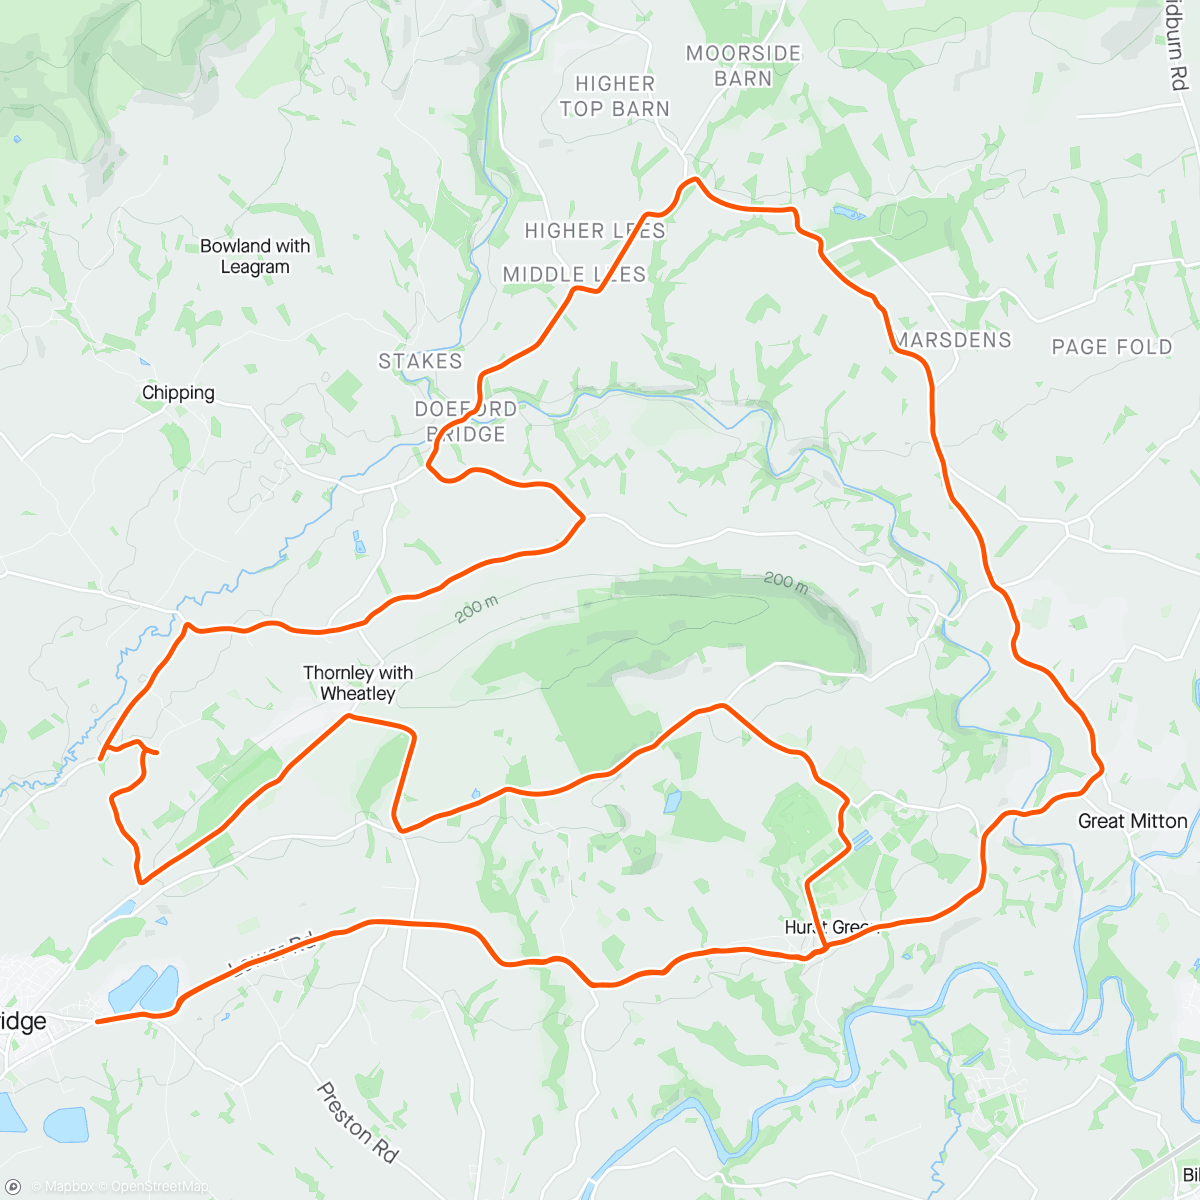 「Ribble Valley loop」活動的地圖